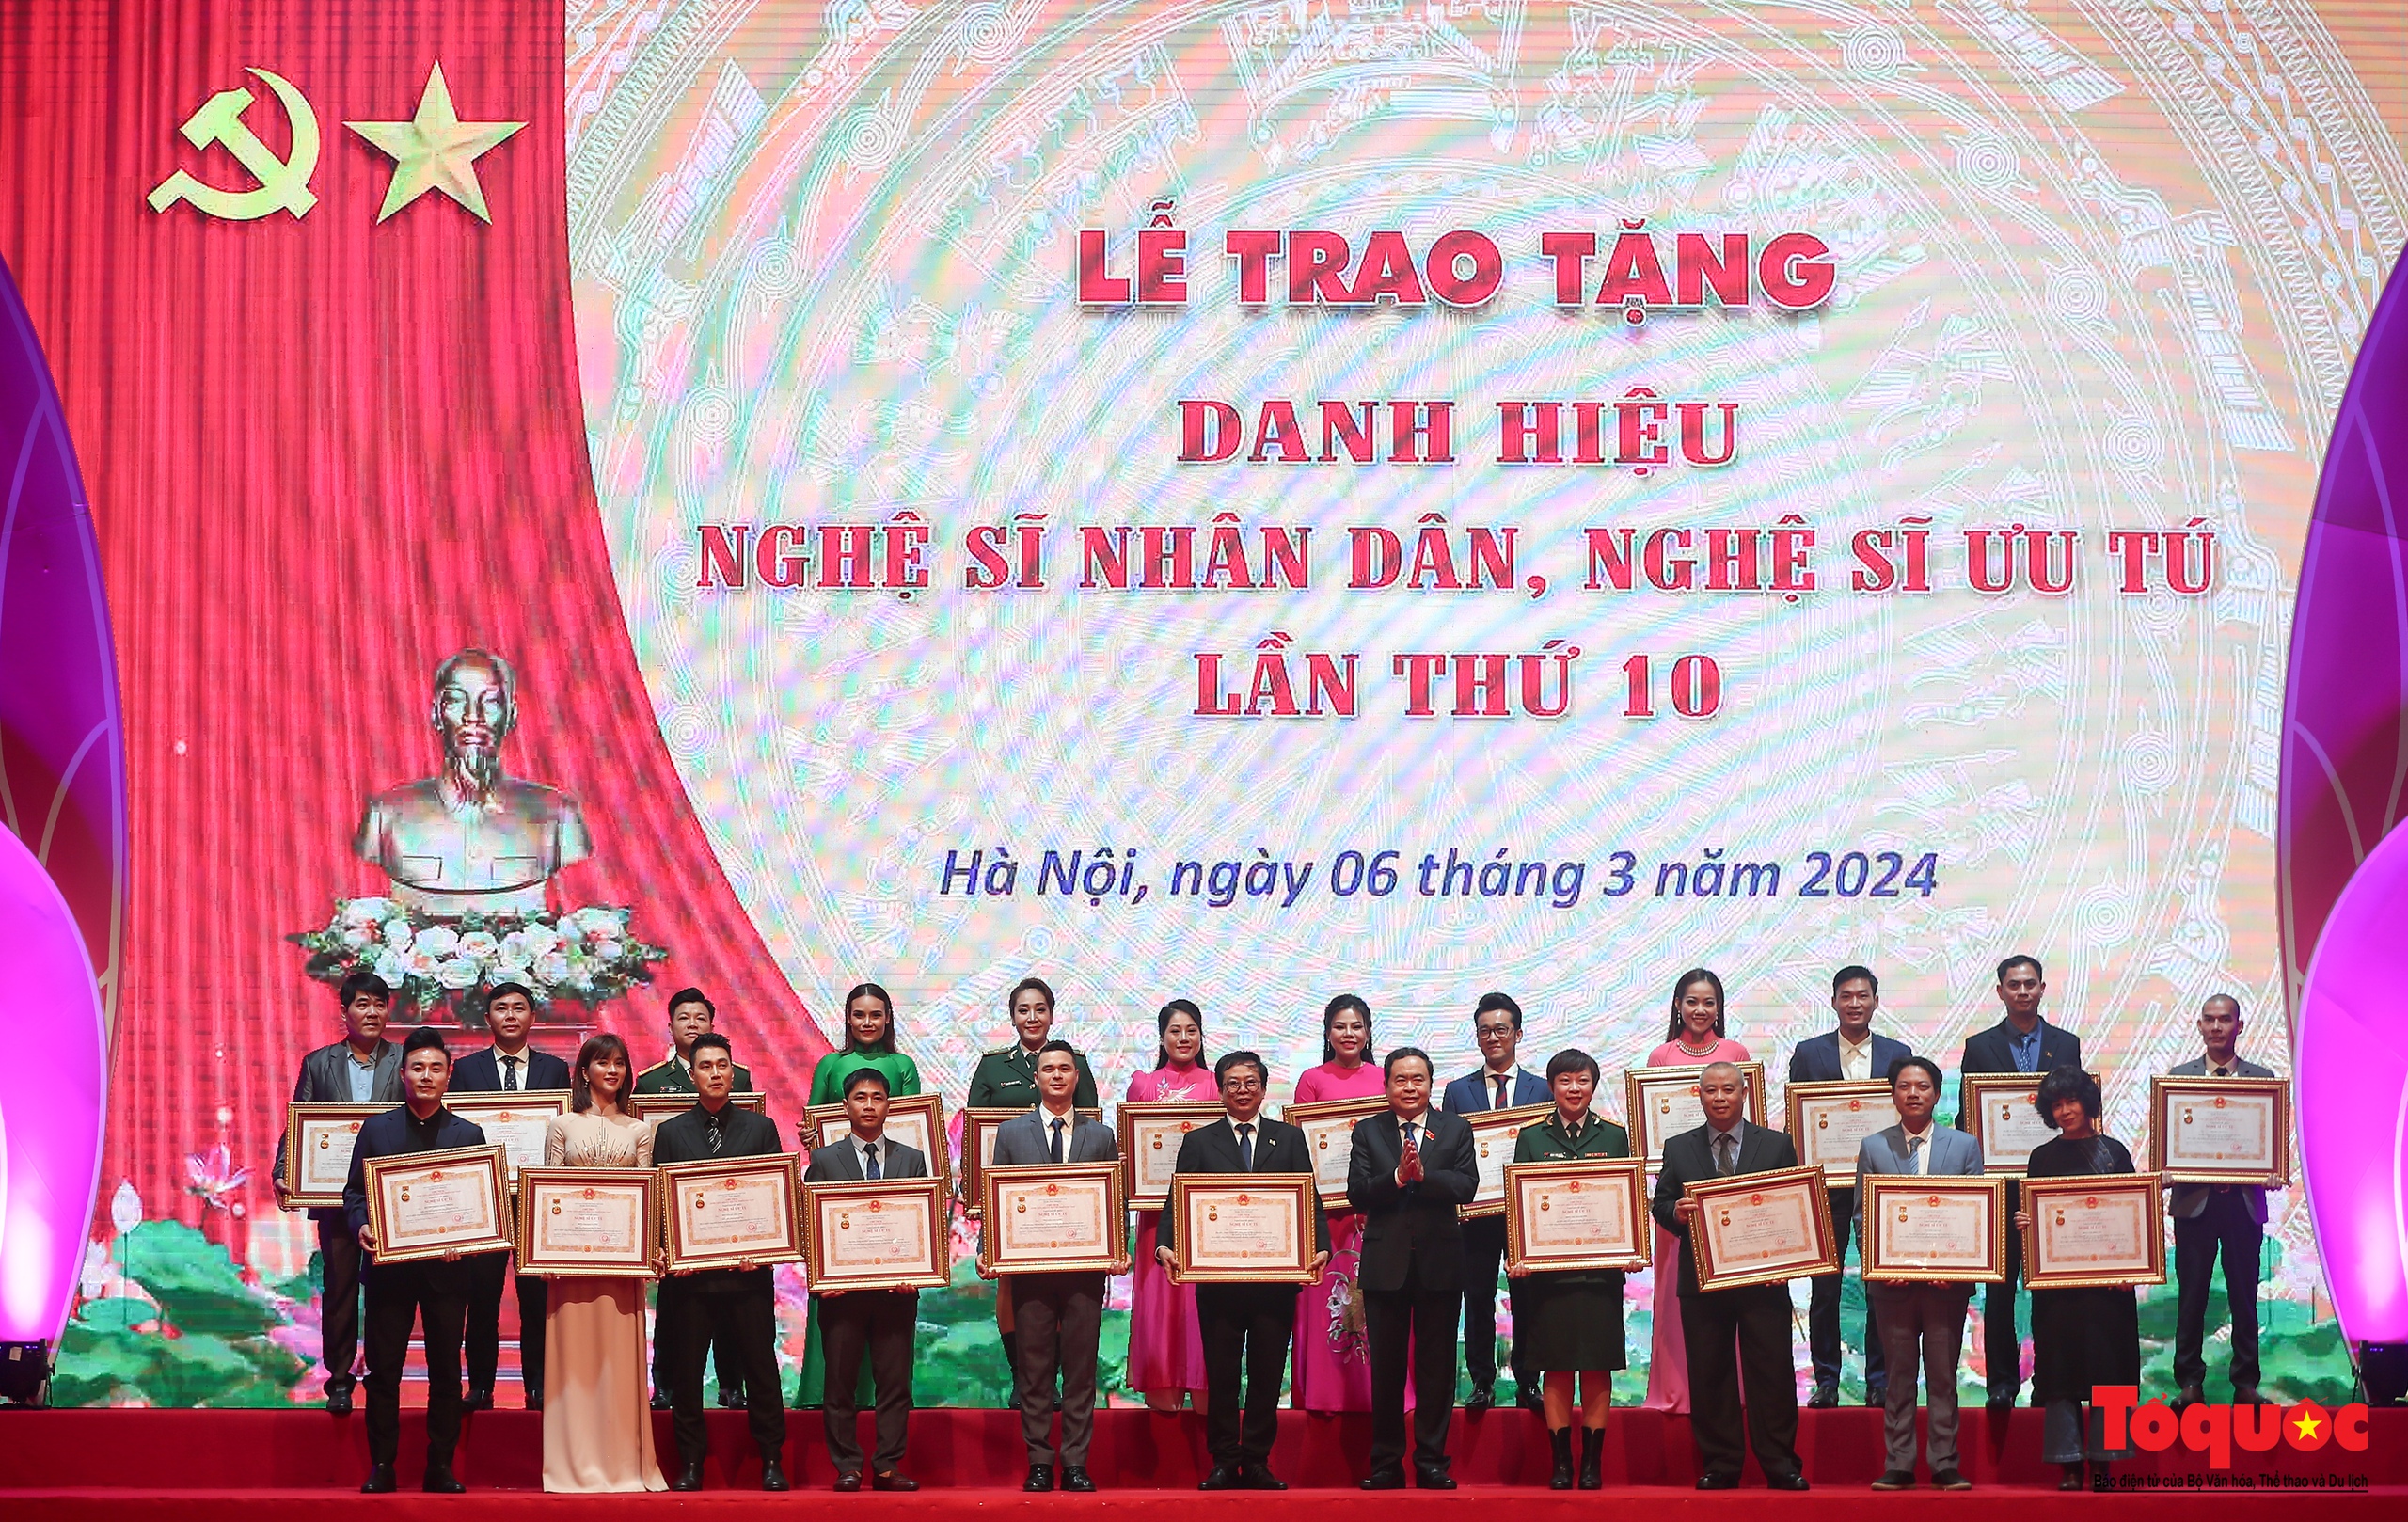 Toàn cảnh Lễ trao tặng danh hiệu Nghệ sĩ Nhân dân, Nghệ sĩ Ưu tú lần thứ 10 - Ảnh 15.